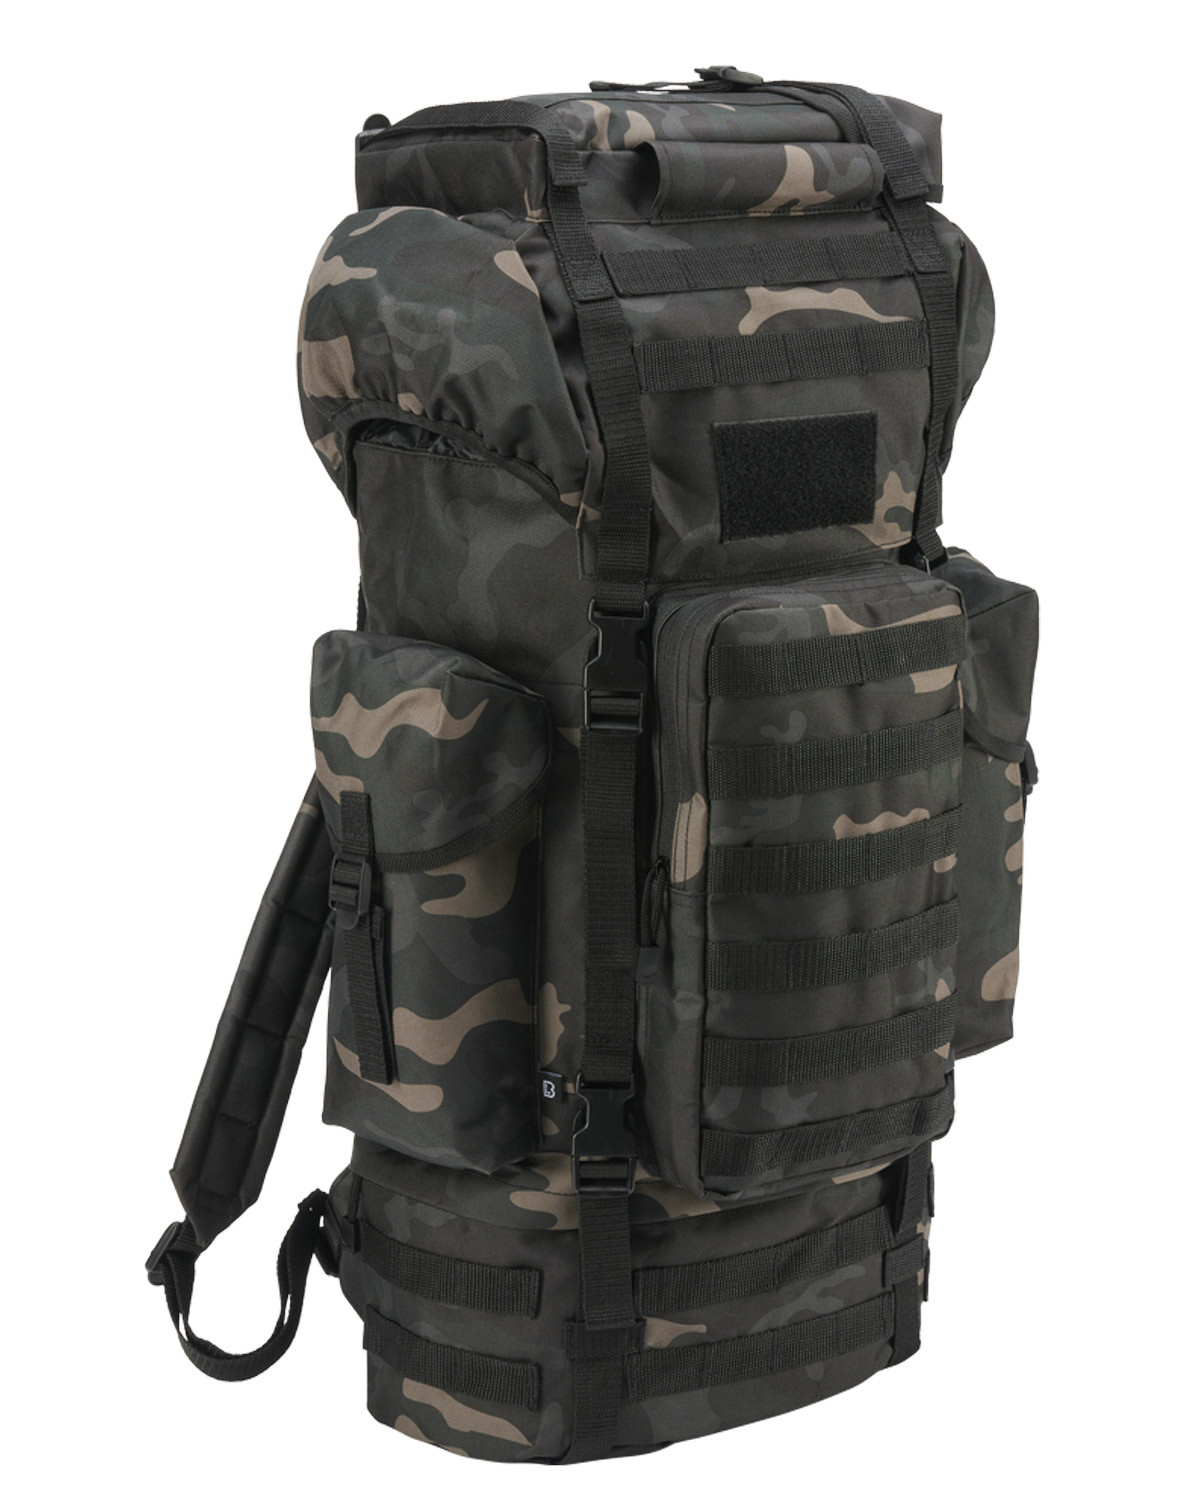 Brandit Combat Backpack Molle - 65 Liter (Dark Camo, One Size)